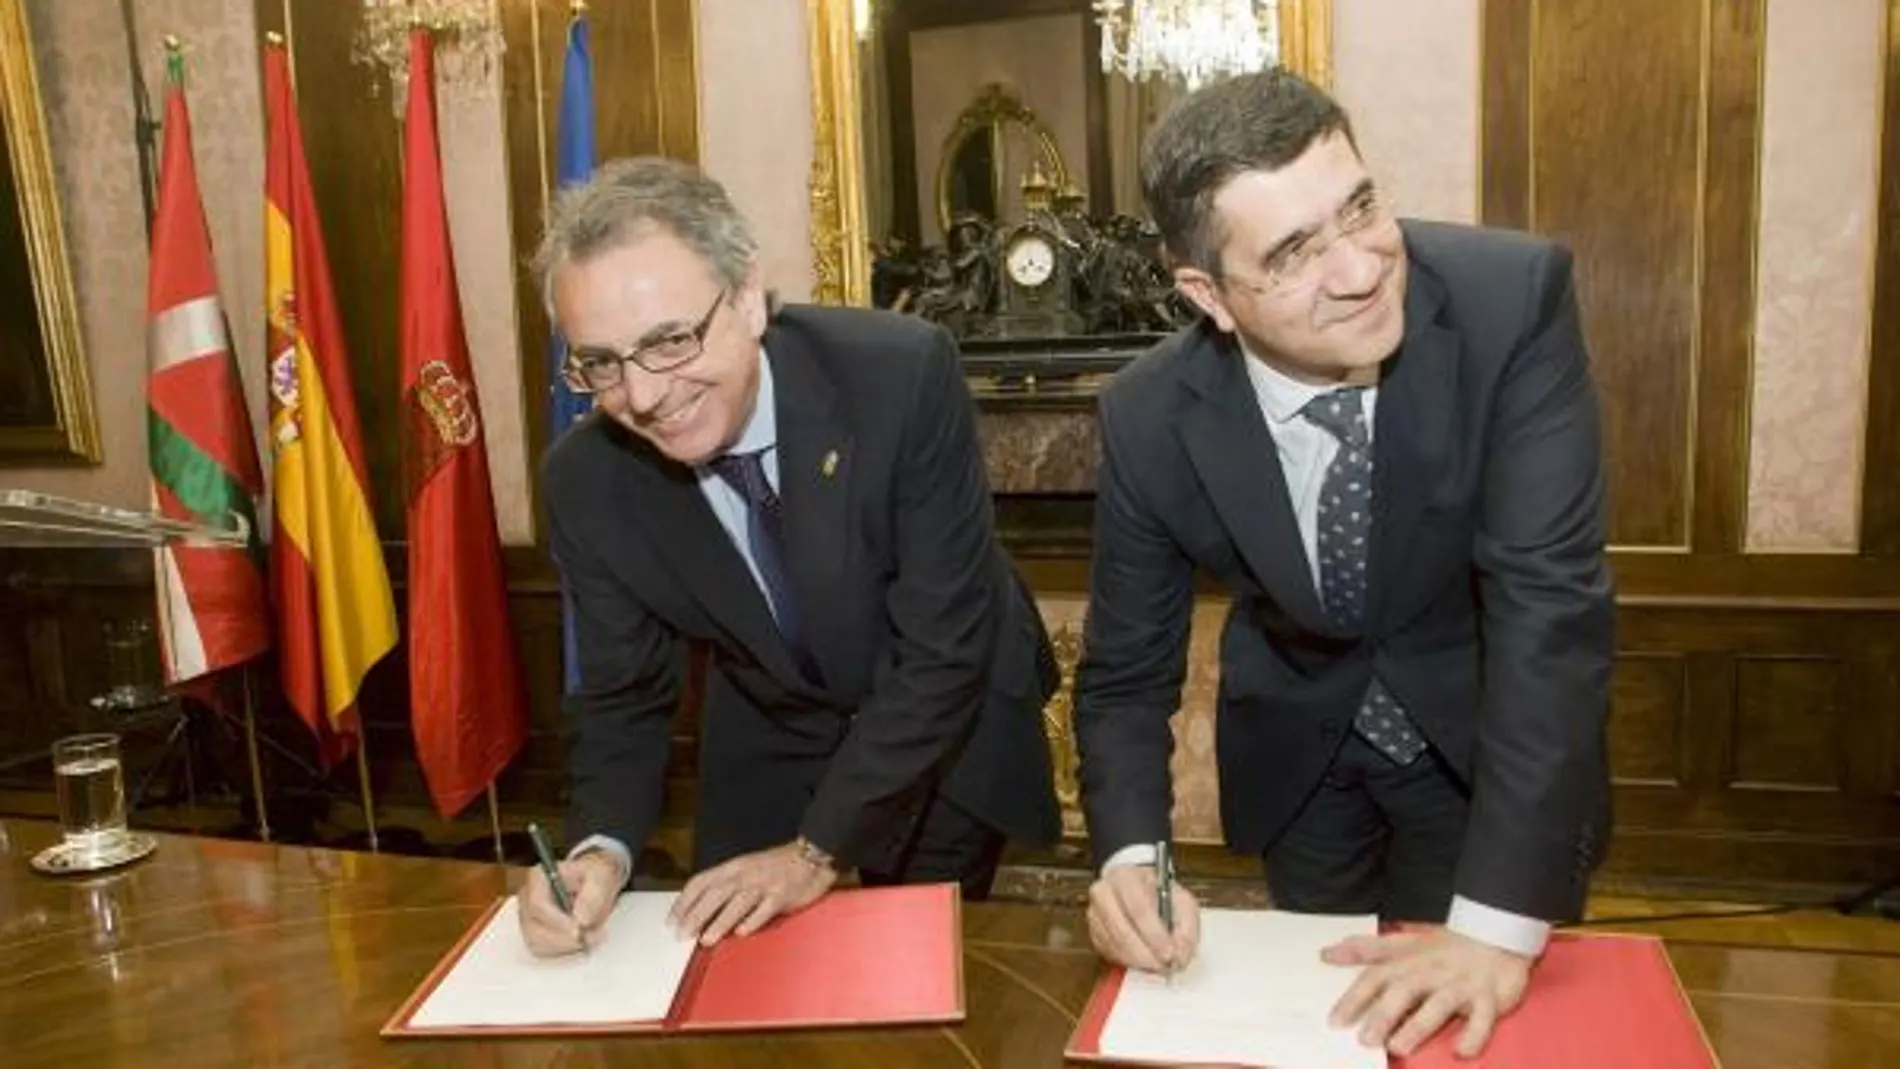 País Vasco y Navarra sellan un acuerdo de colaboración tras 13 años de bloqueo